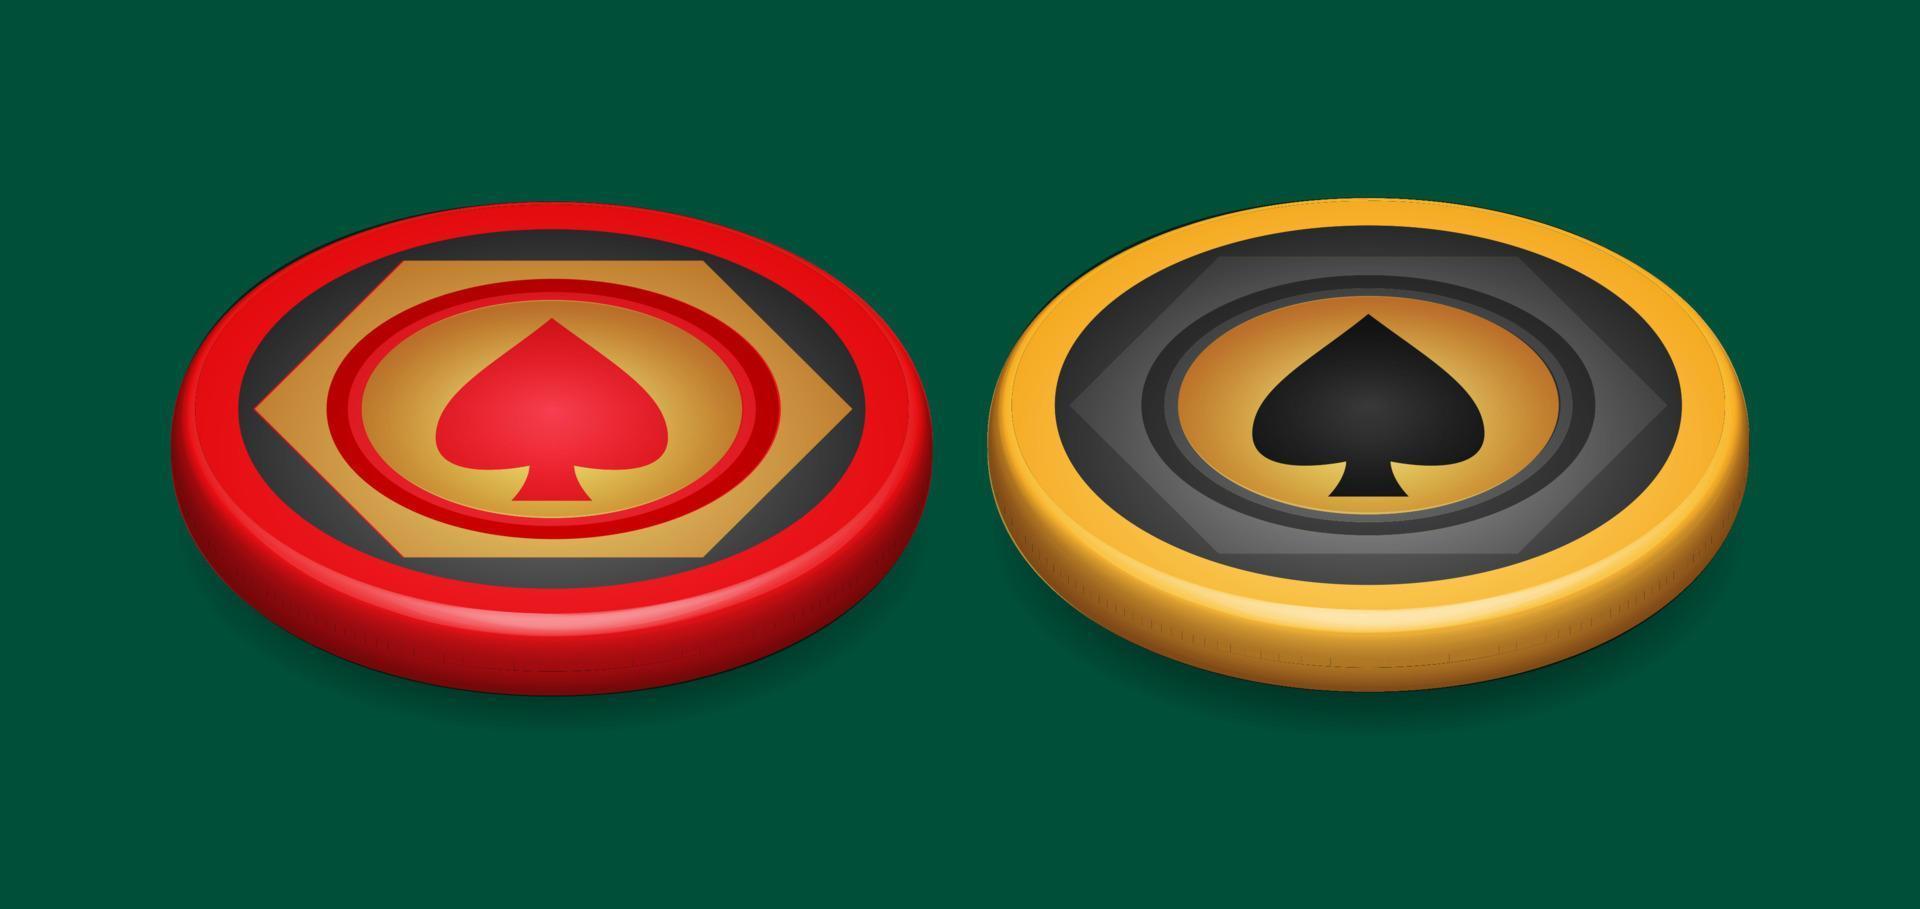 ficha de pôquer de ouro e vermelho, com símbolo de coração, elemento de design de jogo, ilustração vetorial 3d vetor